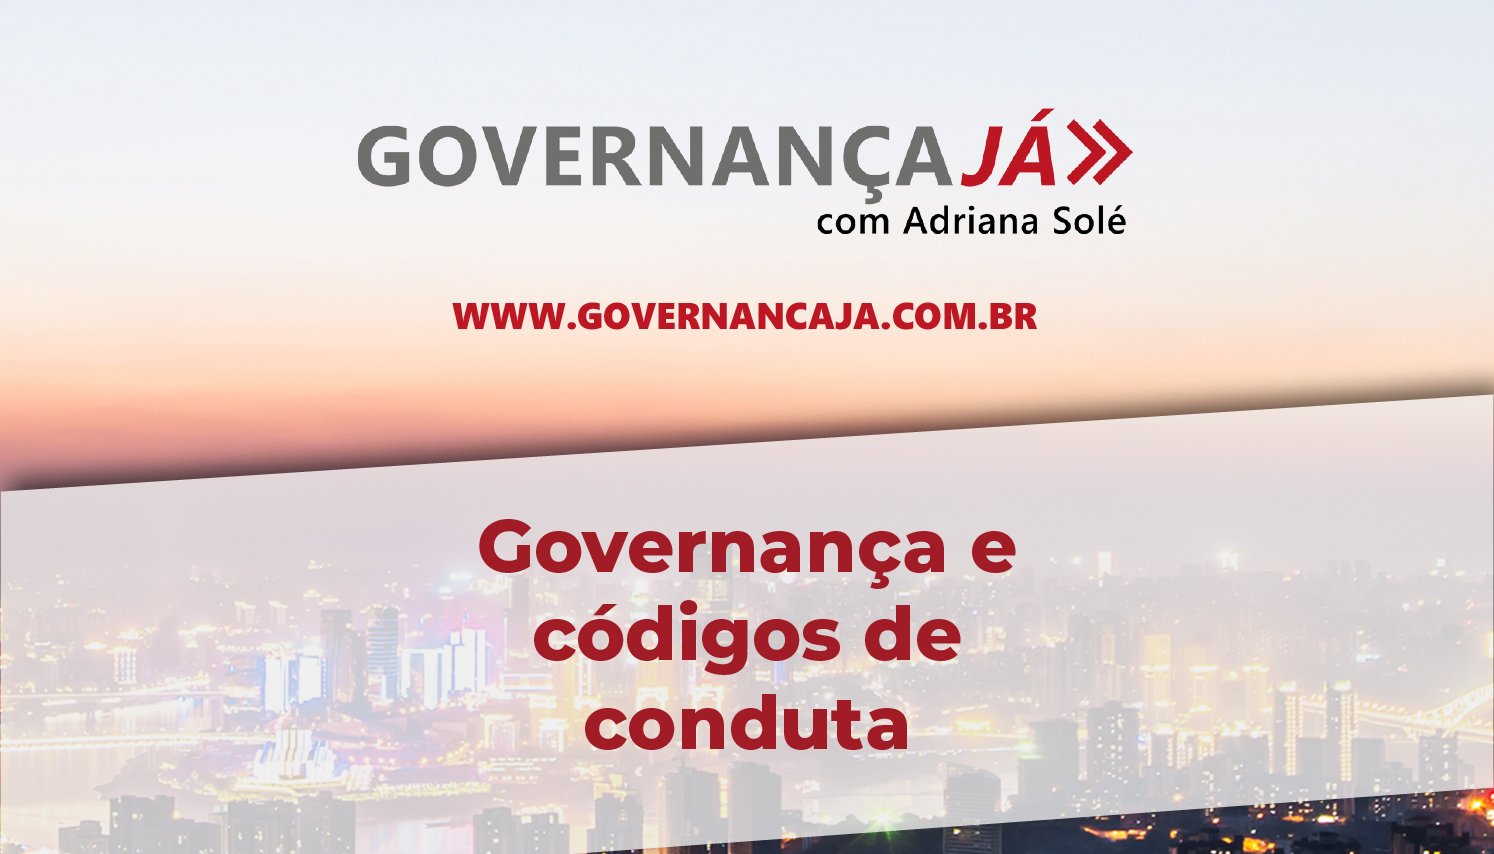 Governança e códigos de conduta